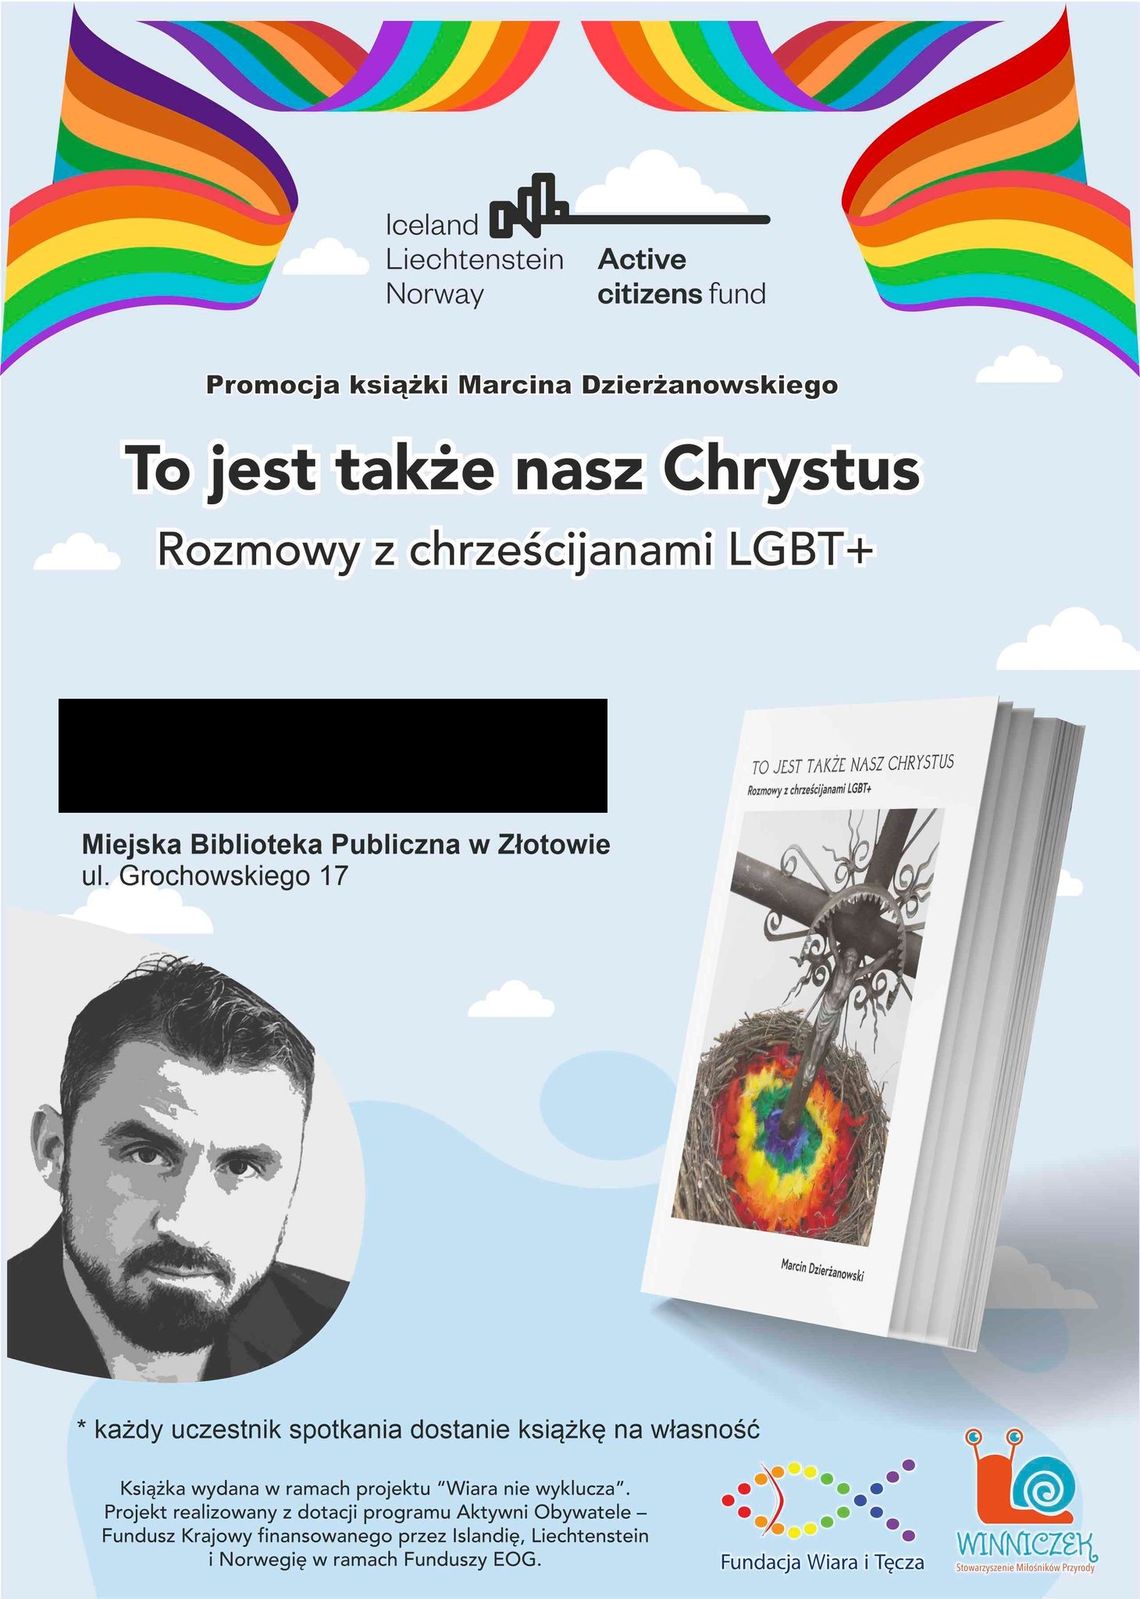 Czy prawicowe władze powiatu złotowskiego współfinansują promocję LGBT?